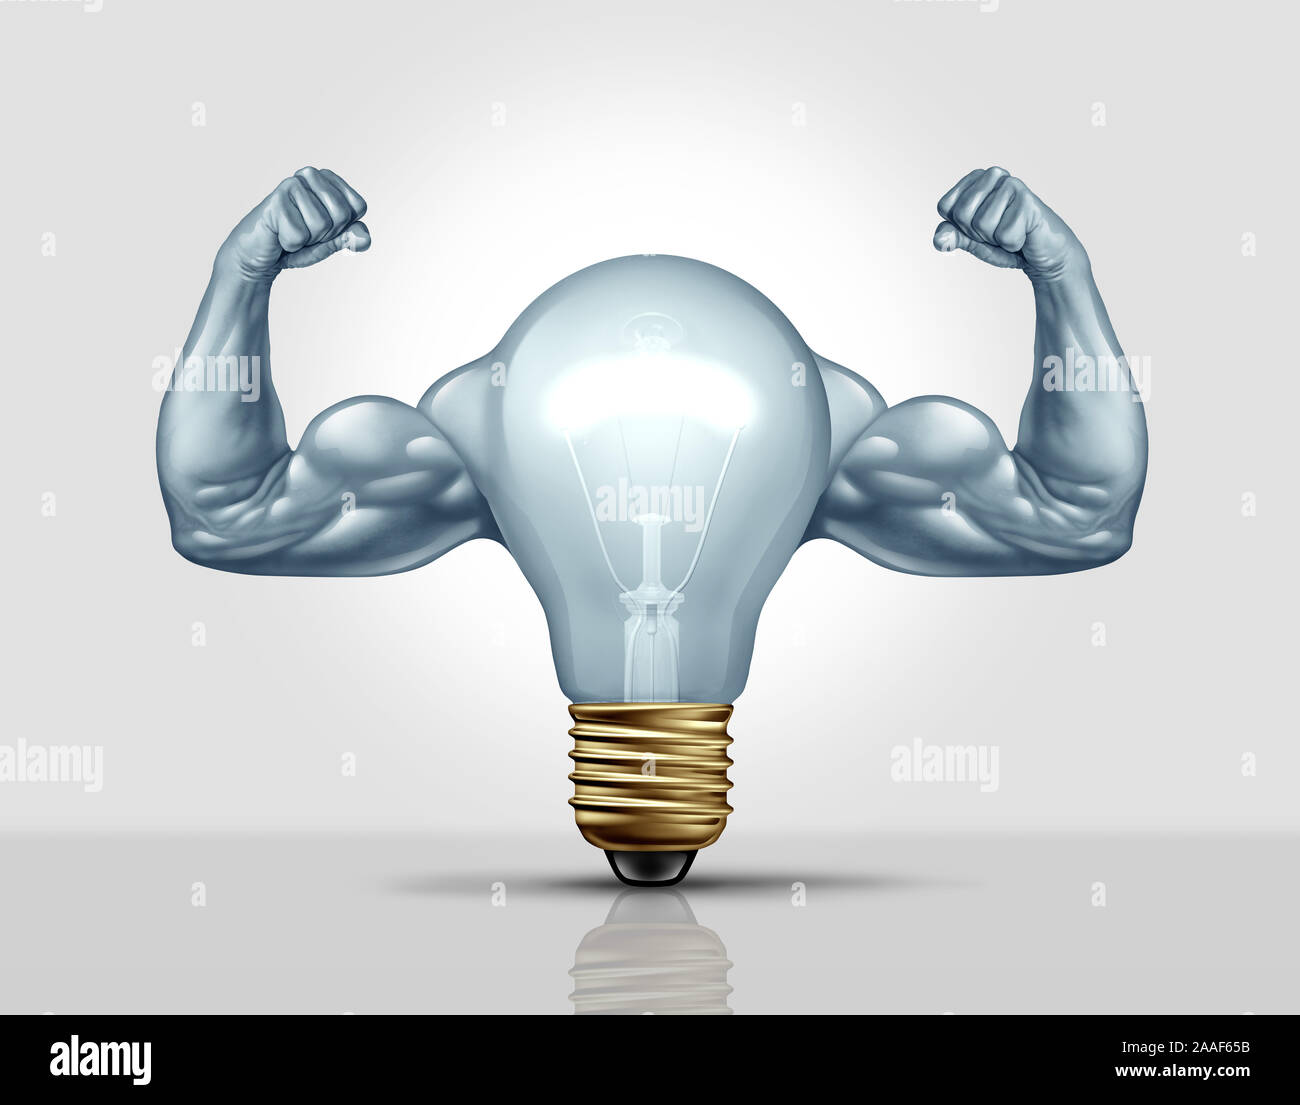 Leistungsfähige Idee und starke kreative Ideen Metapher und Business Kreativität Stärke als eine Glühbirne oder Glühbirne mit Muskeln als Symbol. Stockfoto